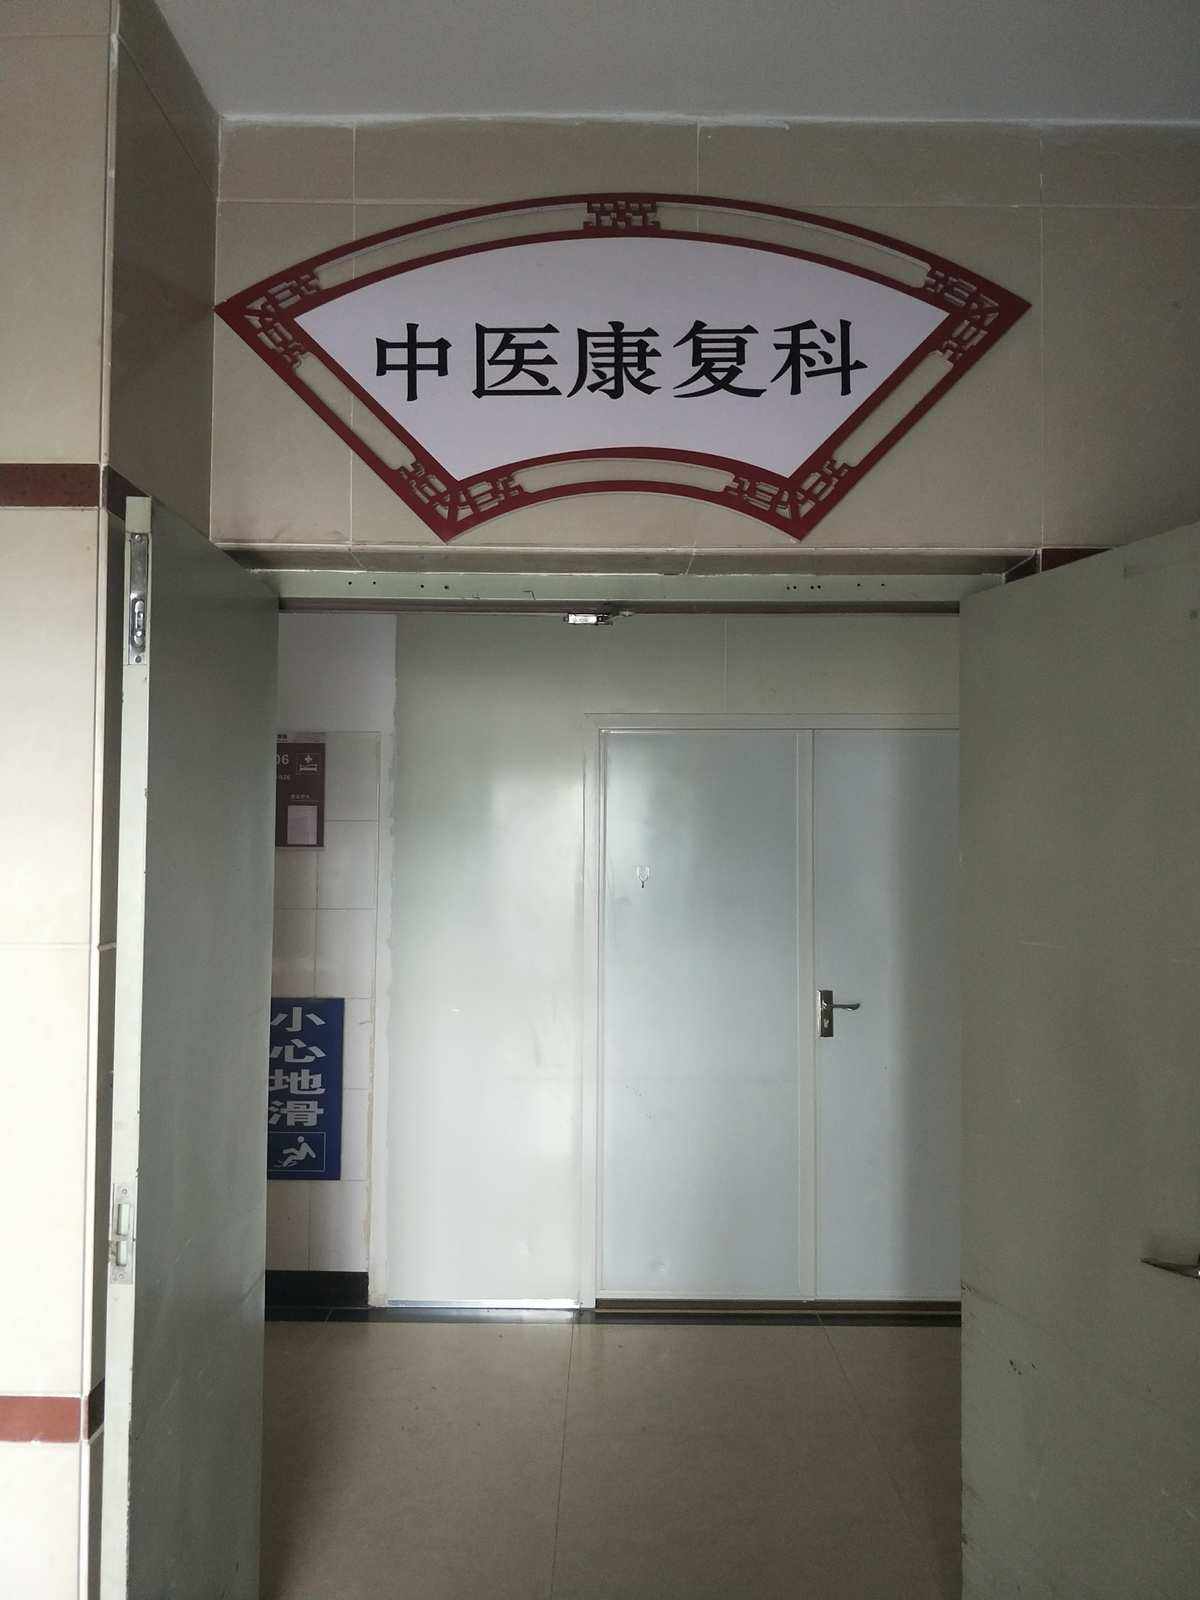 包含哈尔滨市中医医院医院黄牛挂号，诚信靠谱合理收费的词条